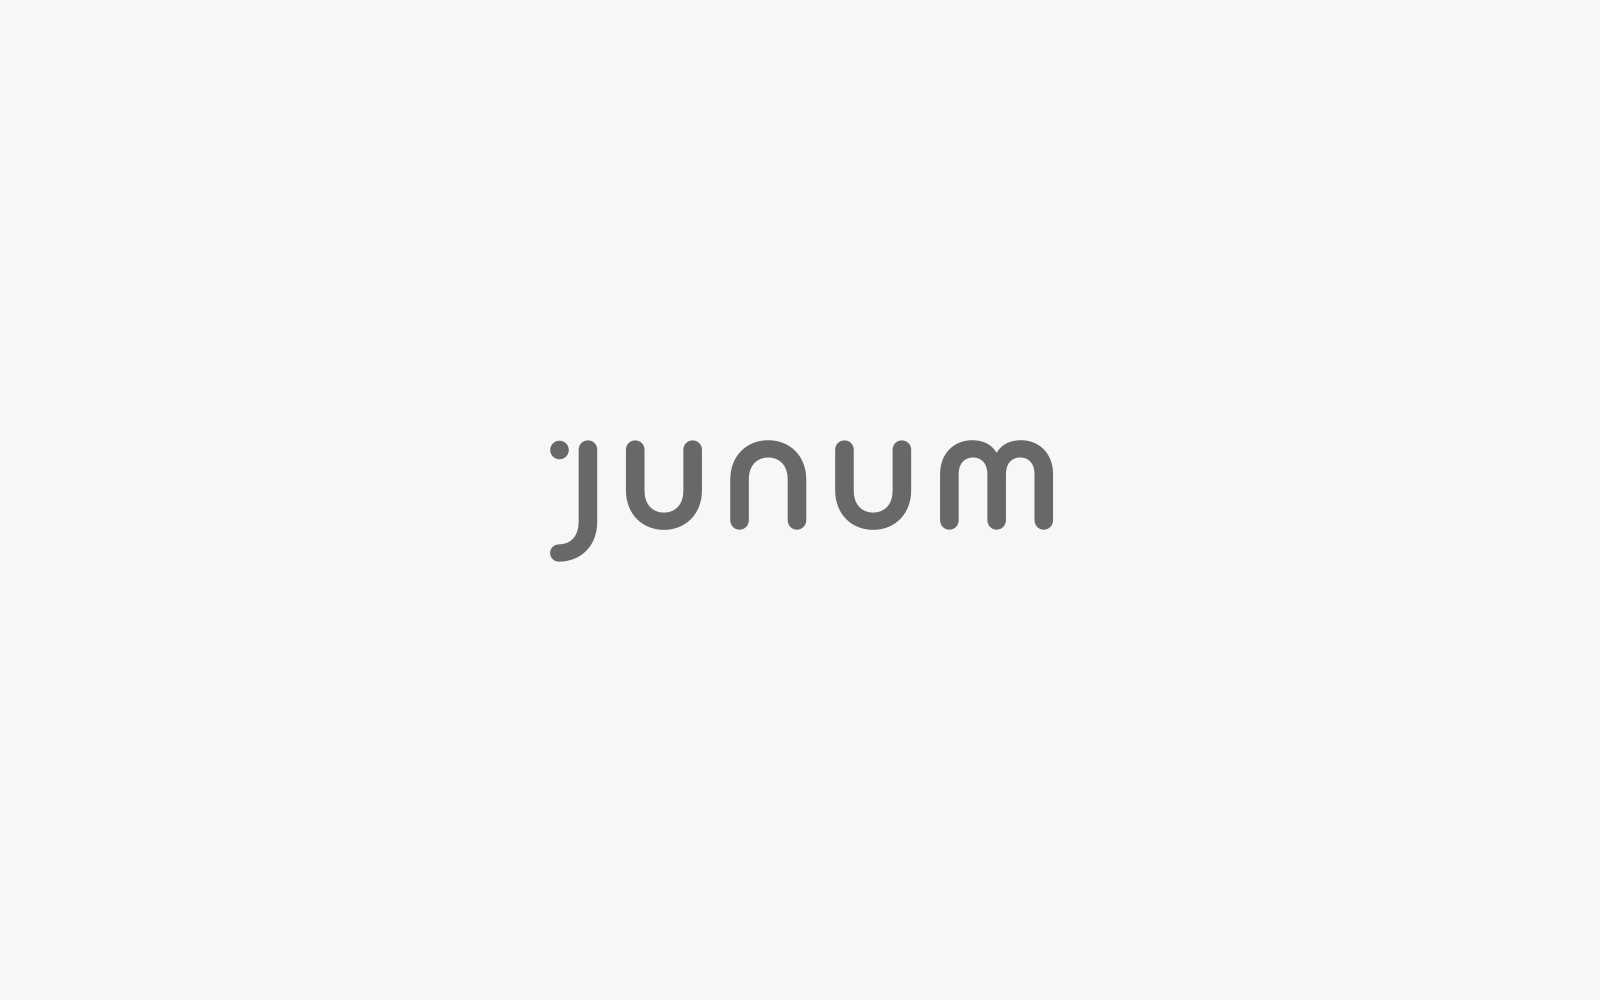 Junum Logotype Portfolio